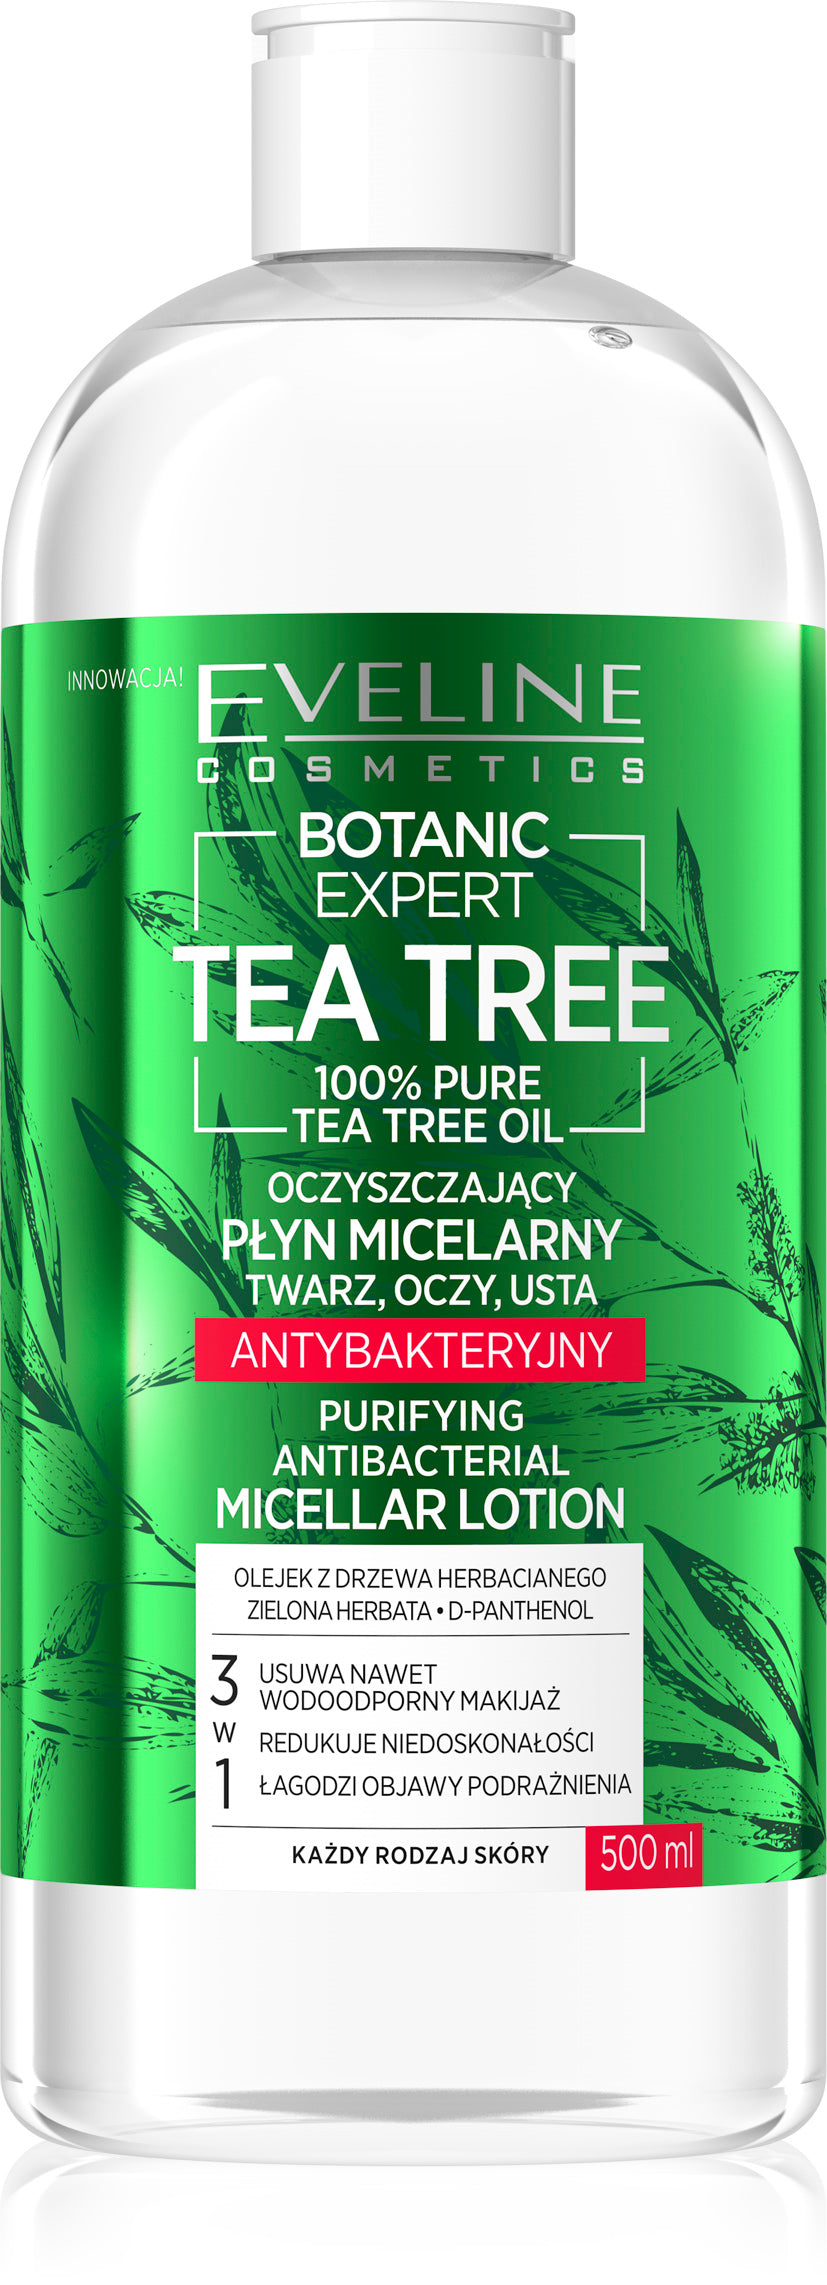 Eveline 100% Tea tree antibacterial micellar losion 500ml